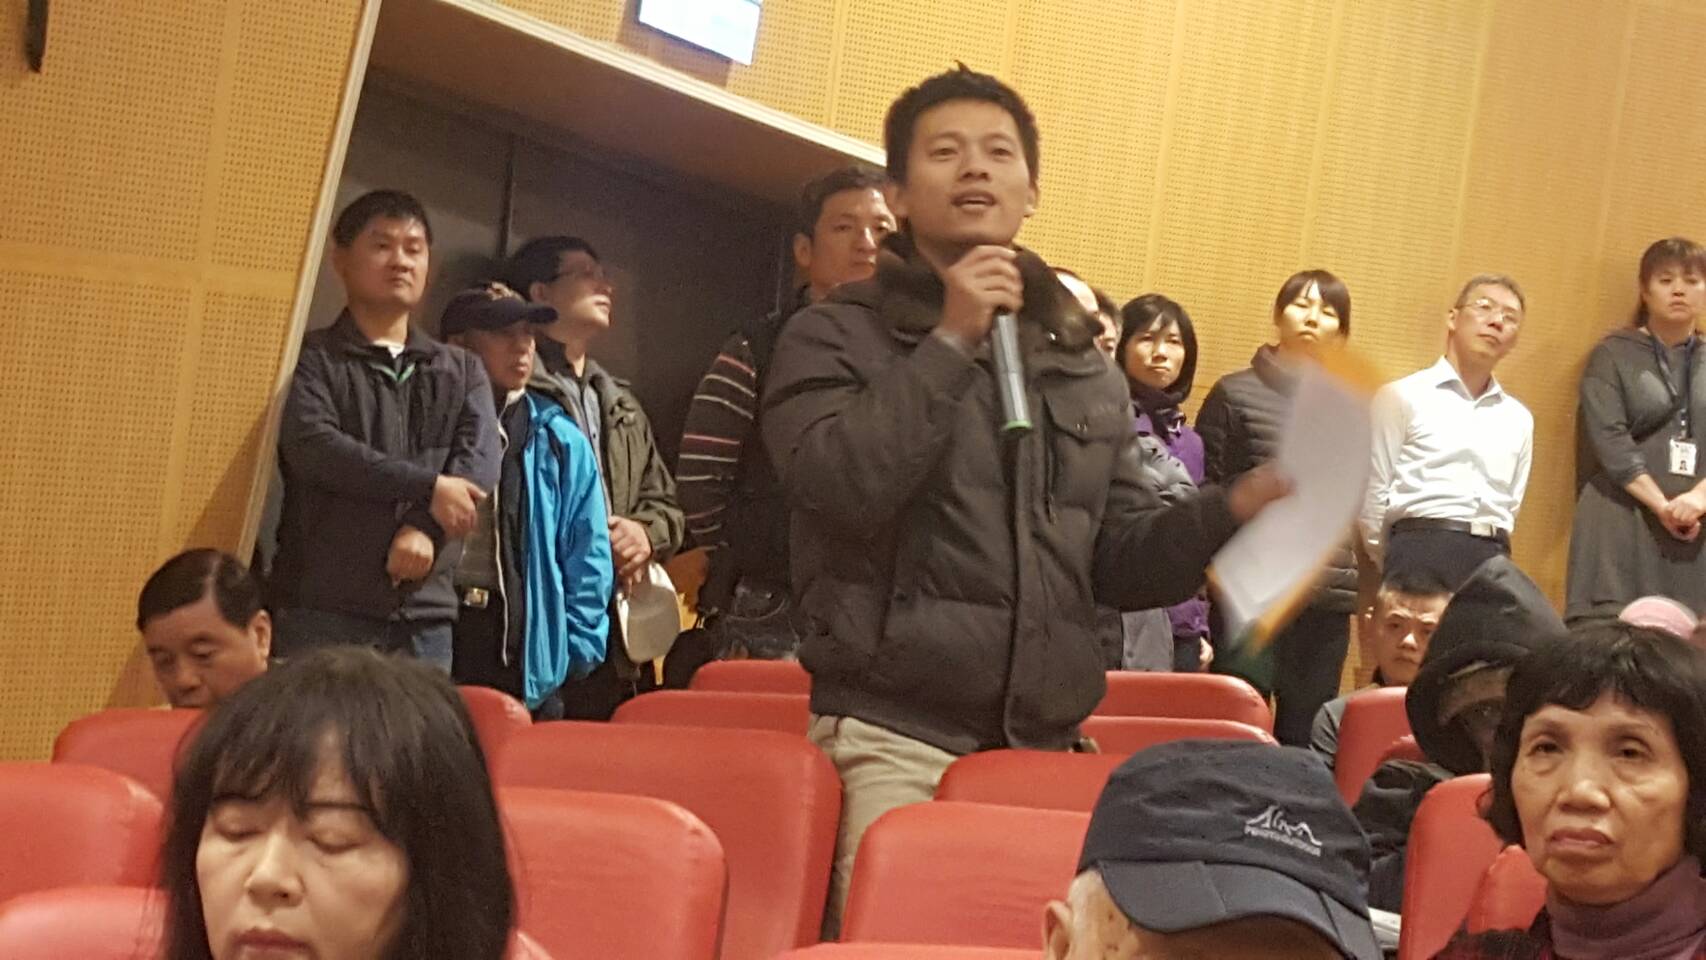 勝洋水產負責人徐志雄對反對興建農舍的言論不以為然